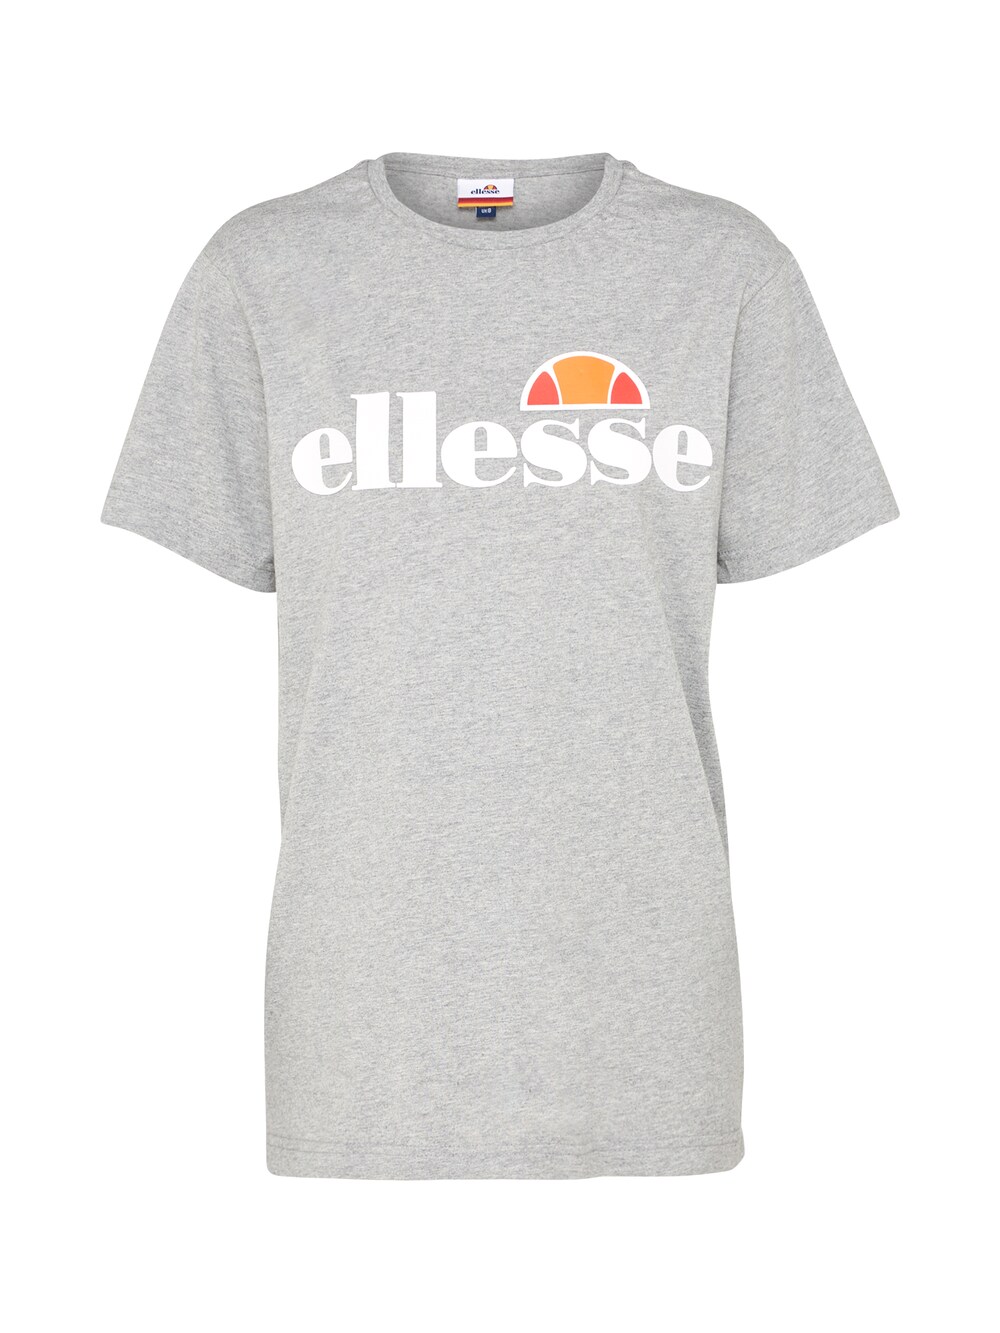 Рубашка ELLESSE Albany, пестрый серый